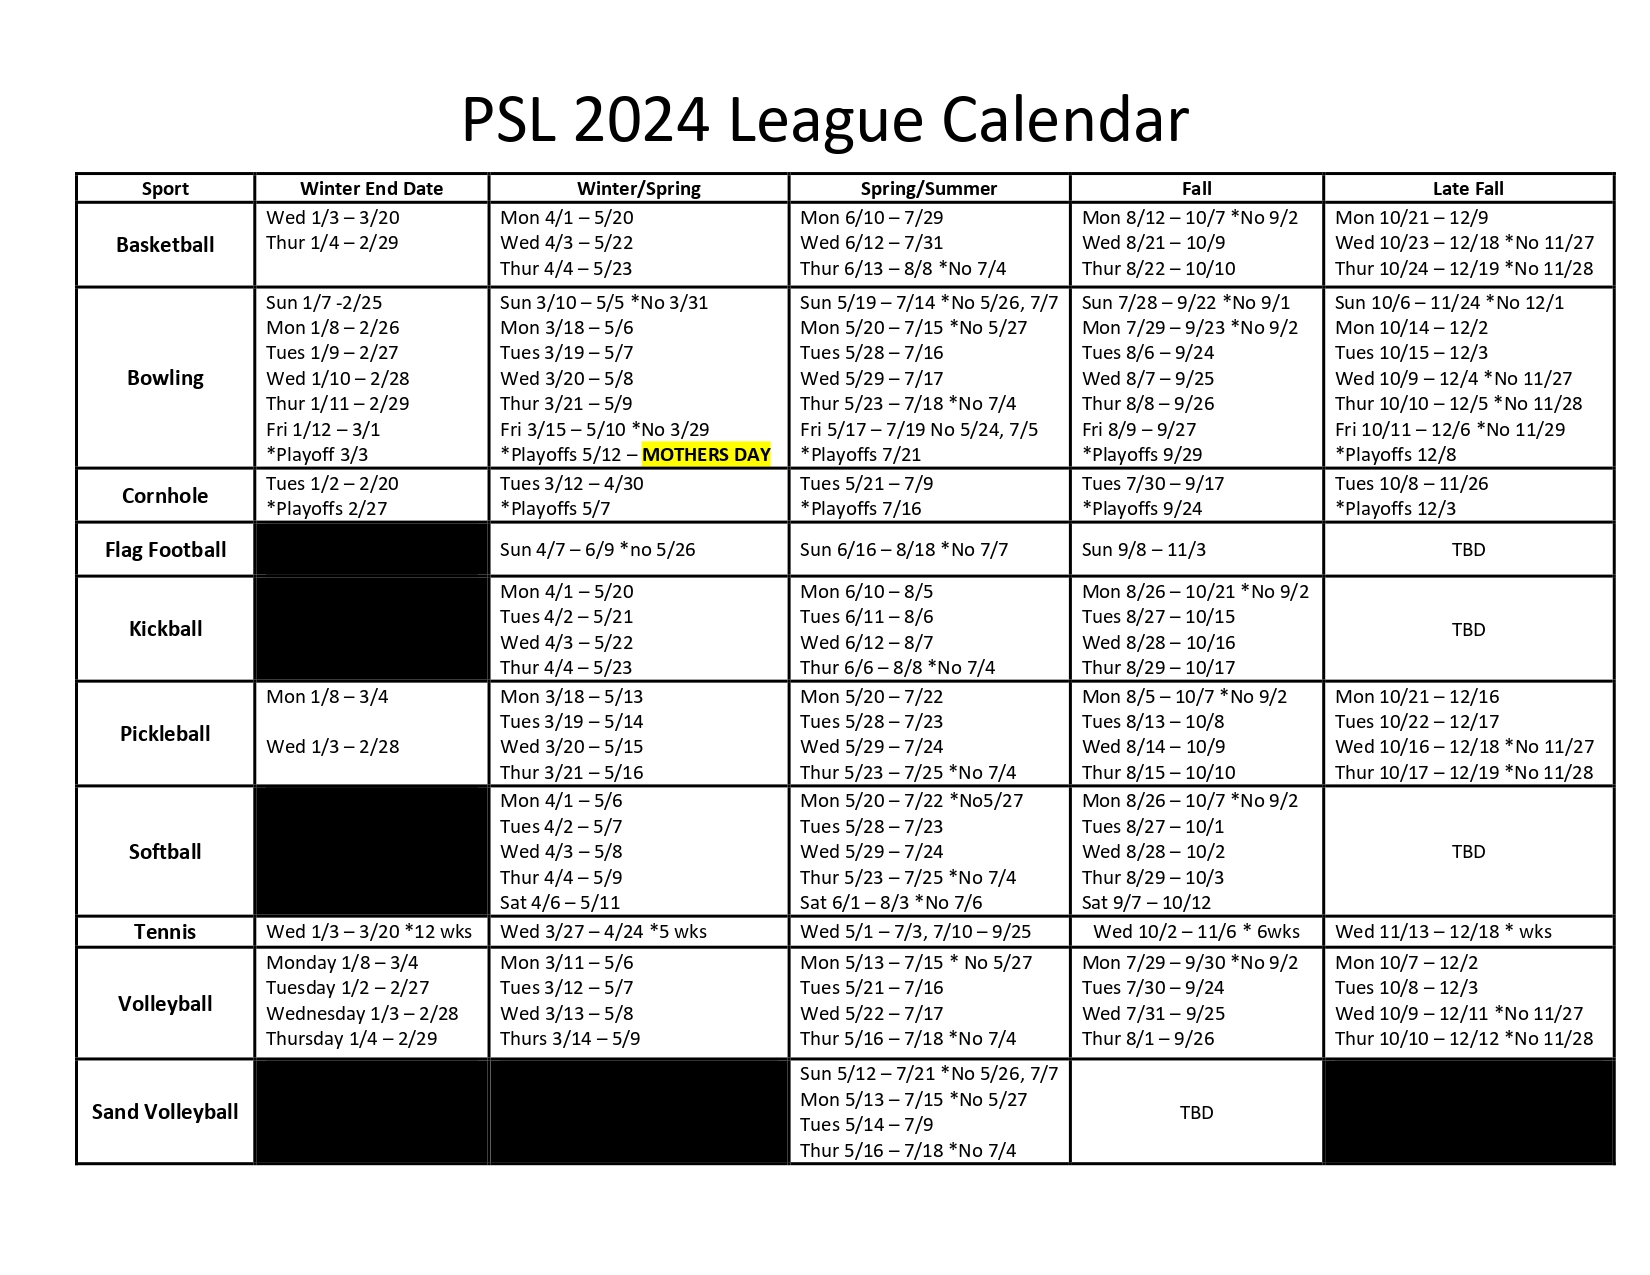 PSL 2024 League Planning Dates PUMP